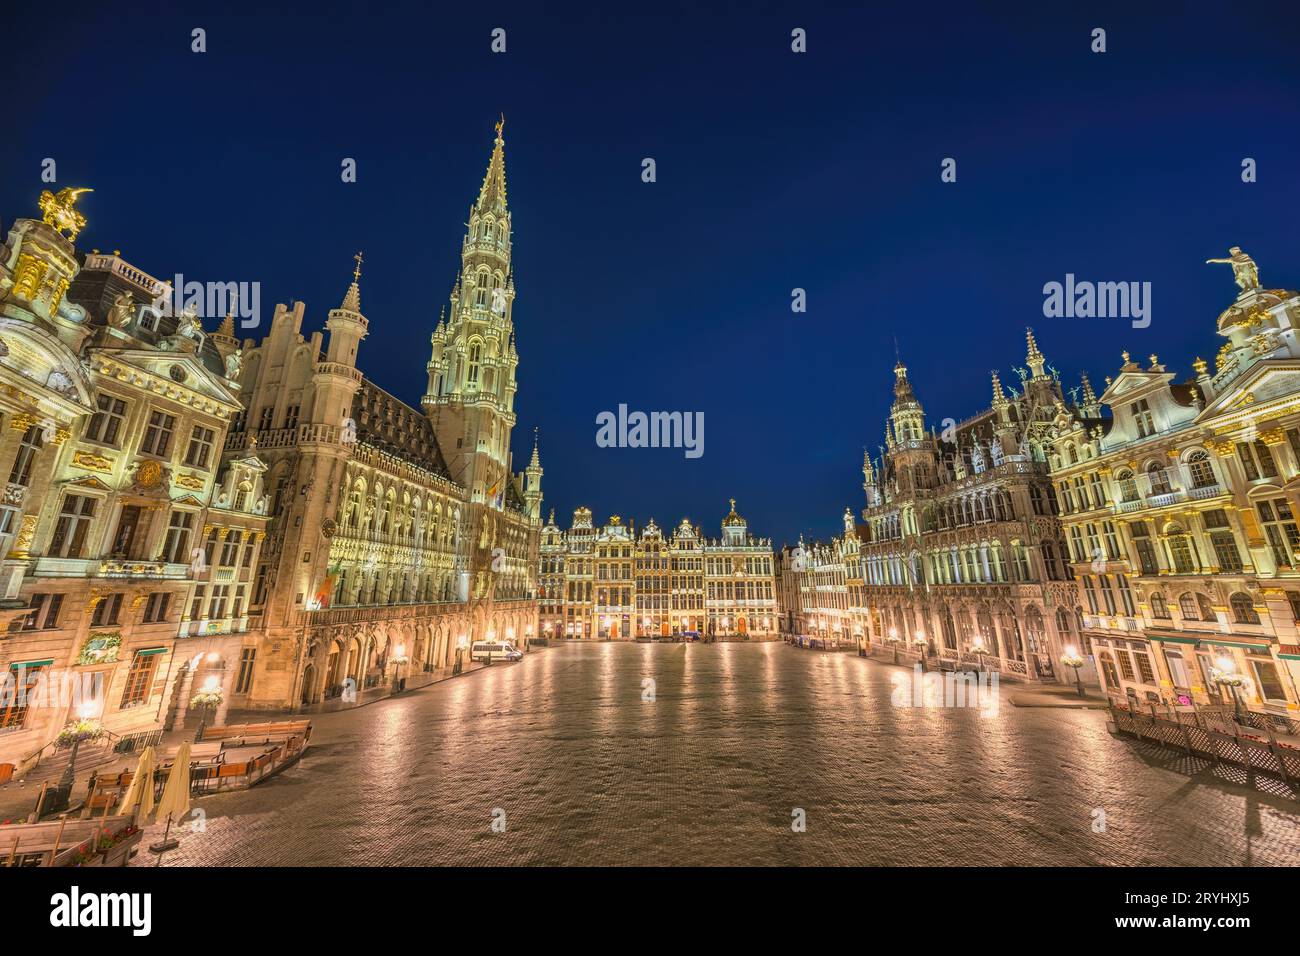 Bruxelles Belgique, nuit des gratte-ciel de la ville sur la place de la Grand-place Banque D'Images